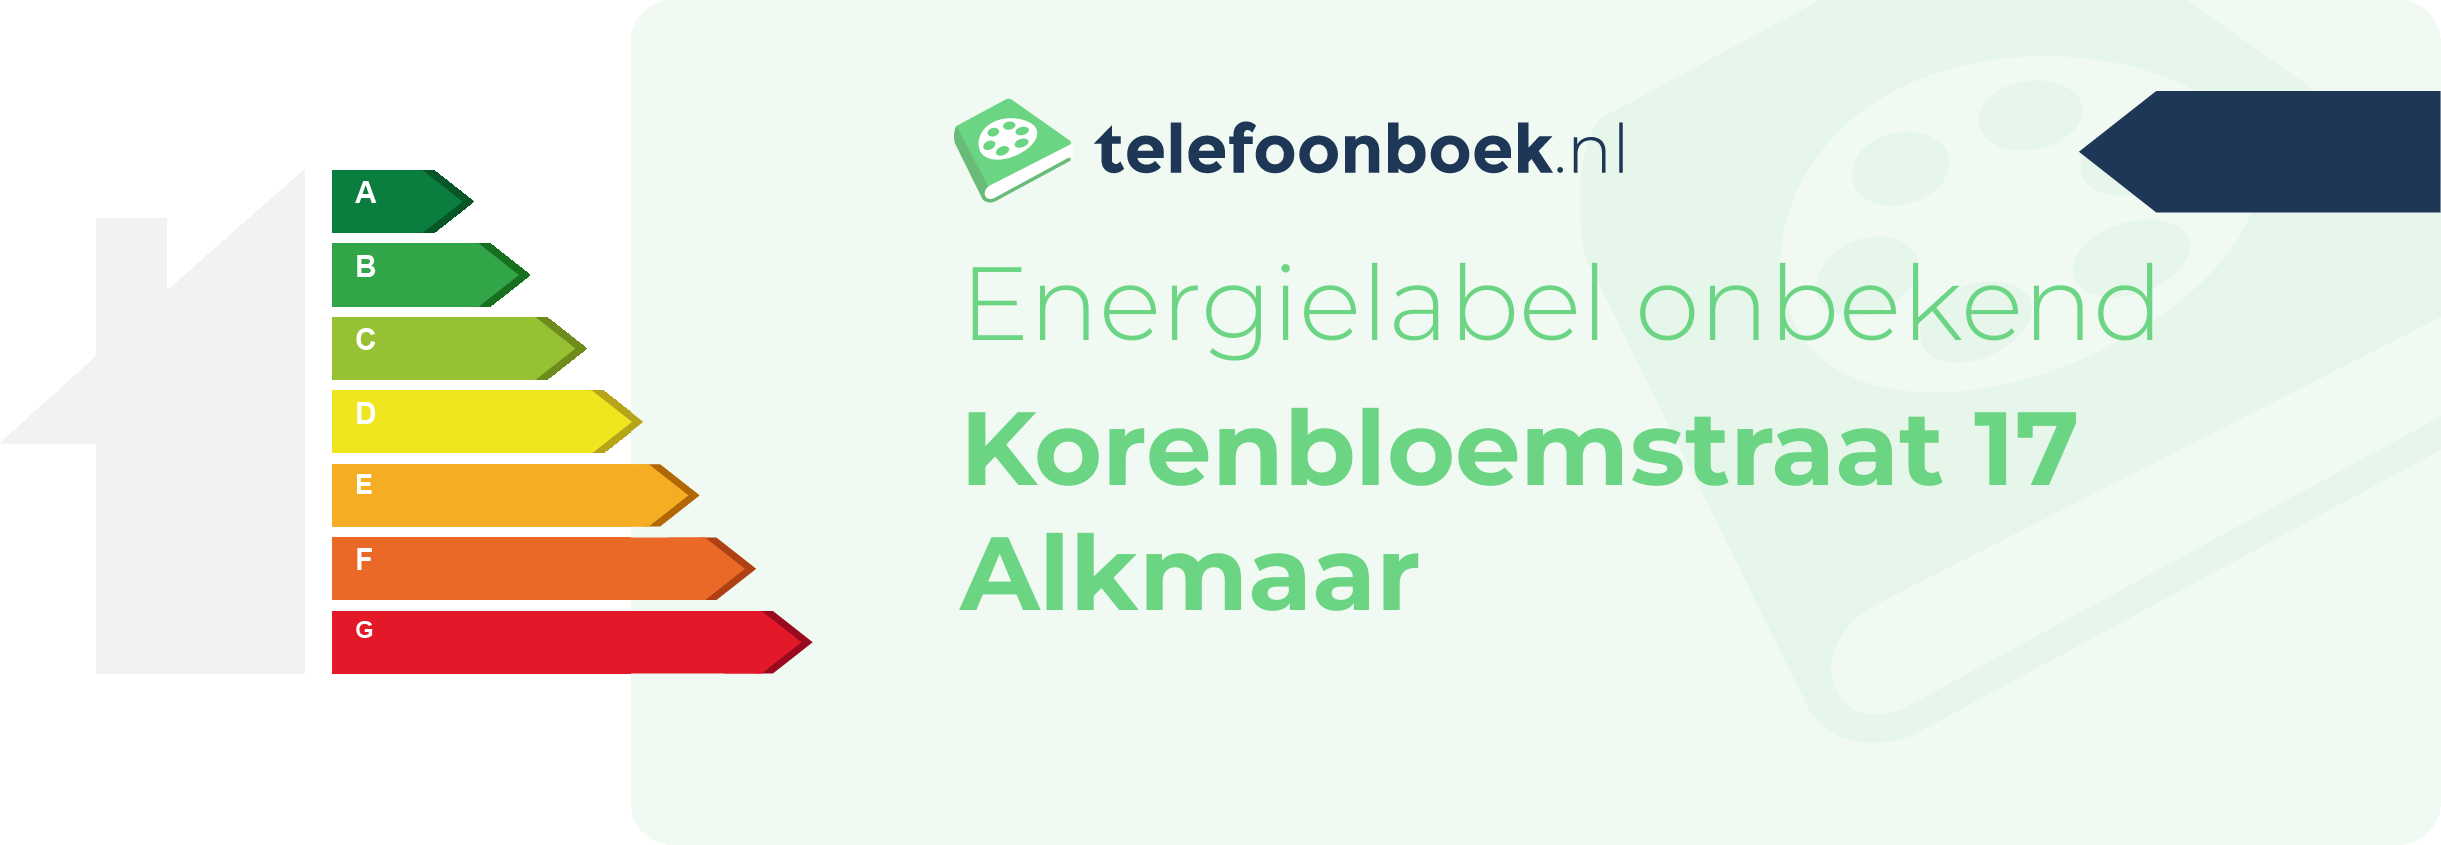 Energielabel Korenbloemstraat 17 Alkmaar